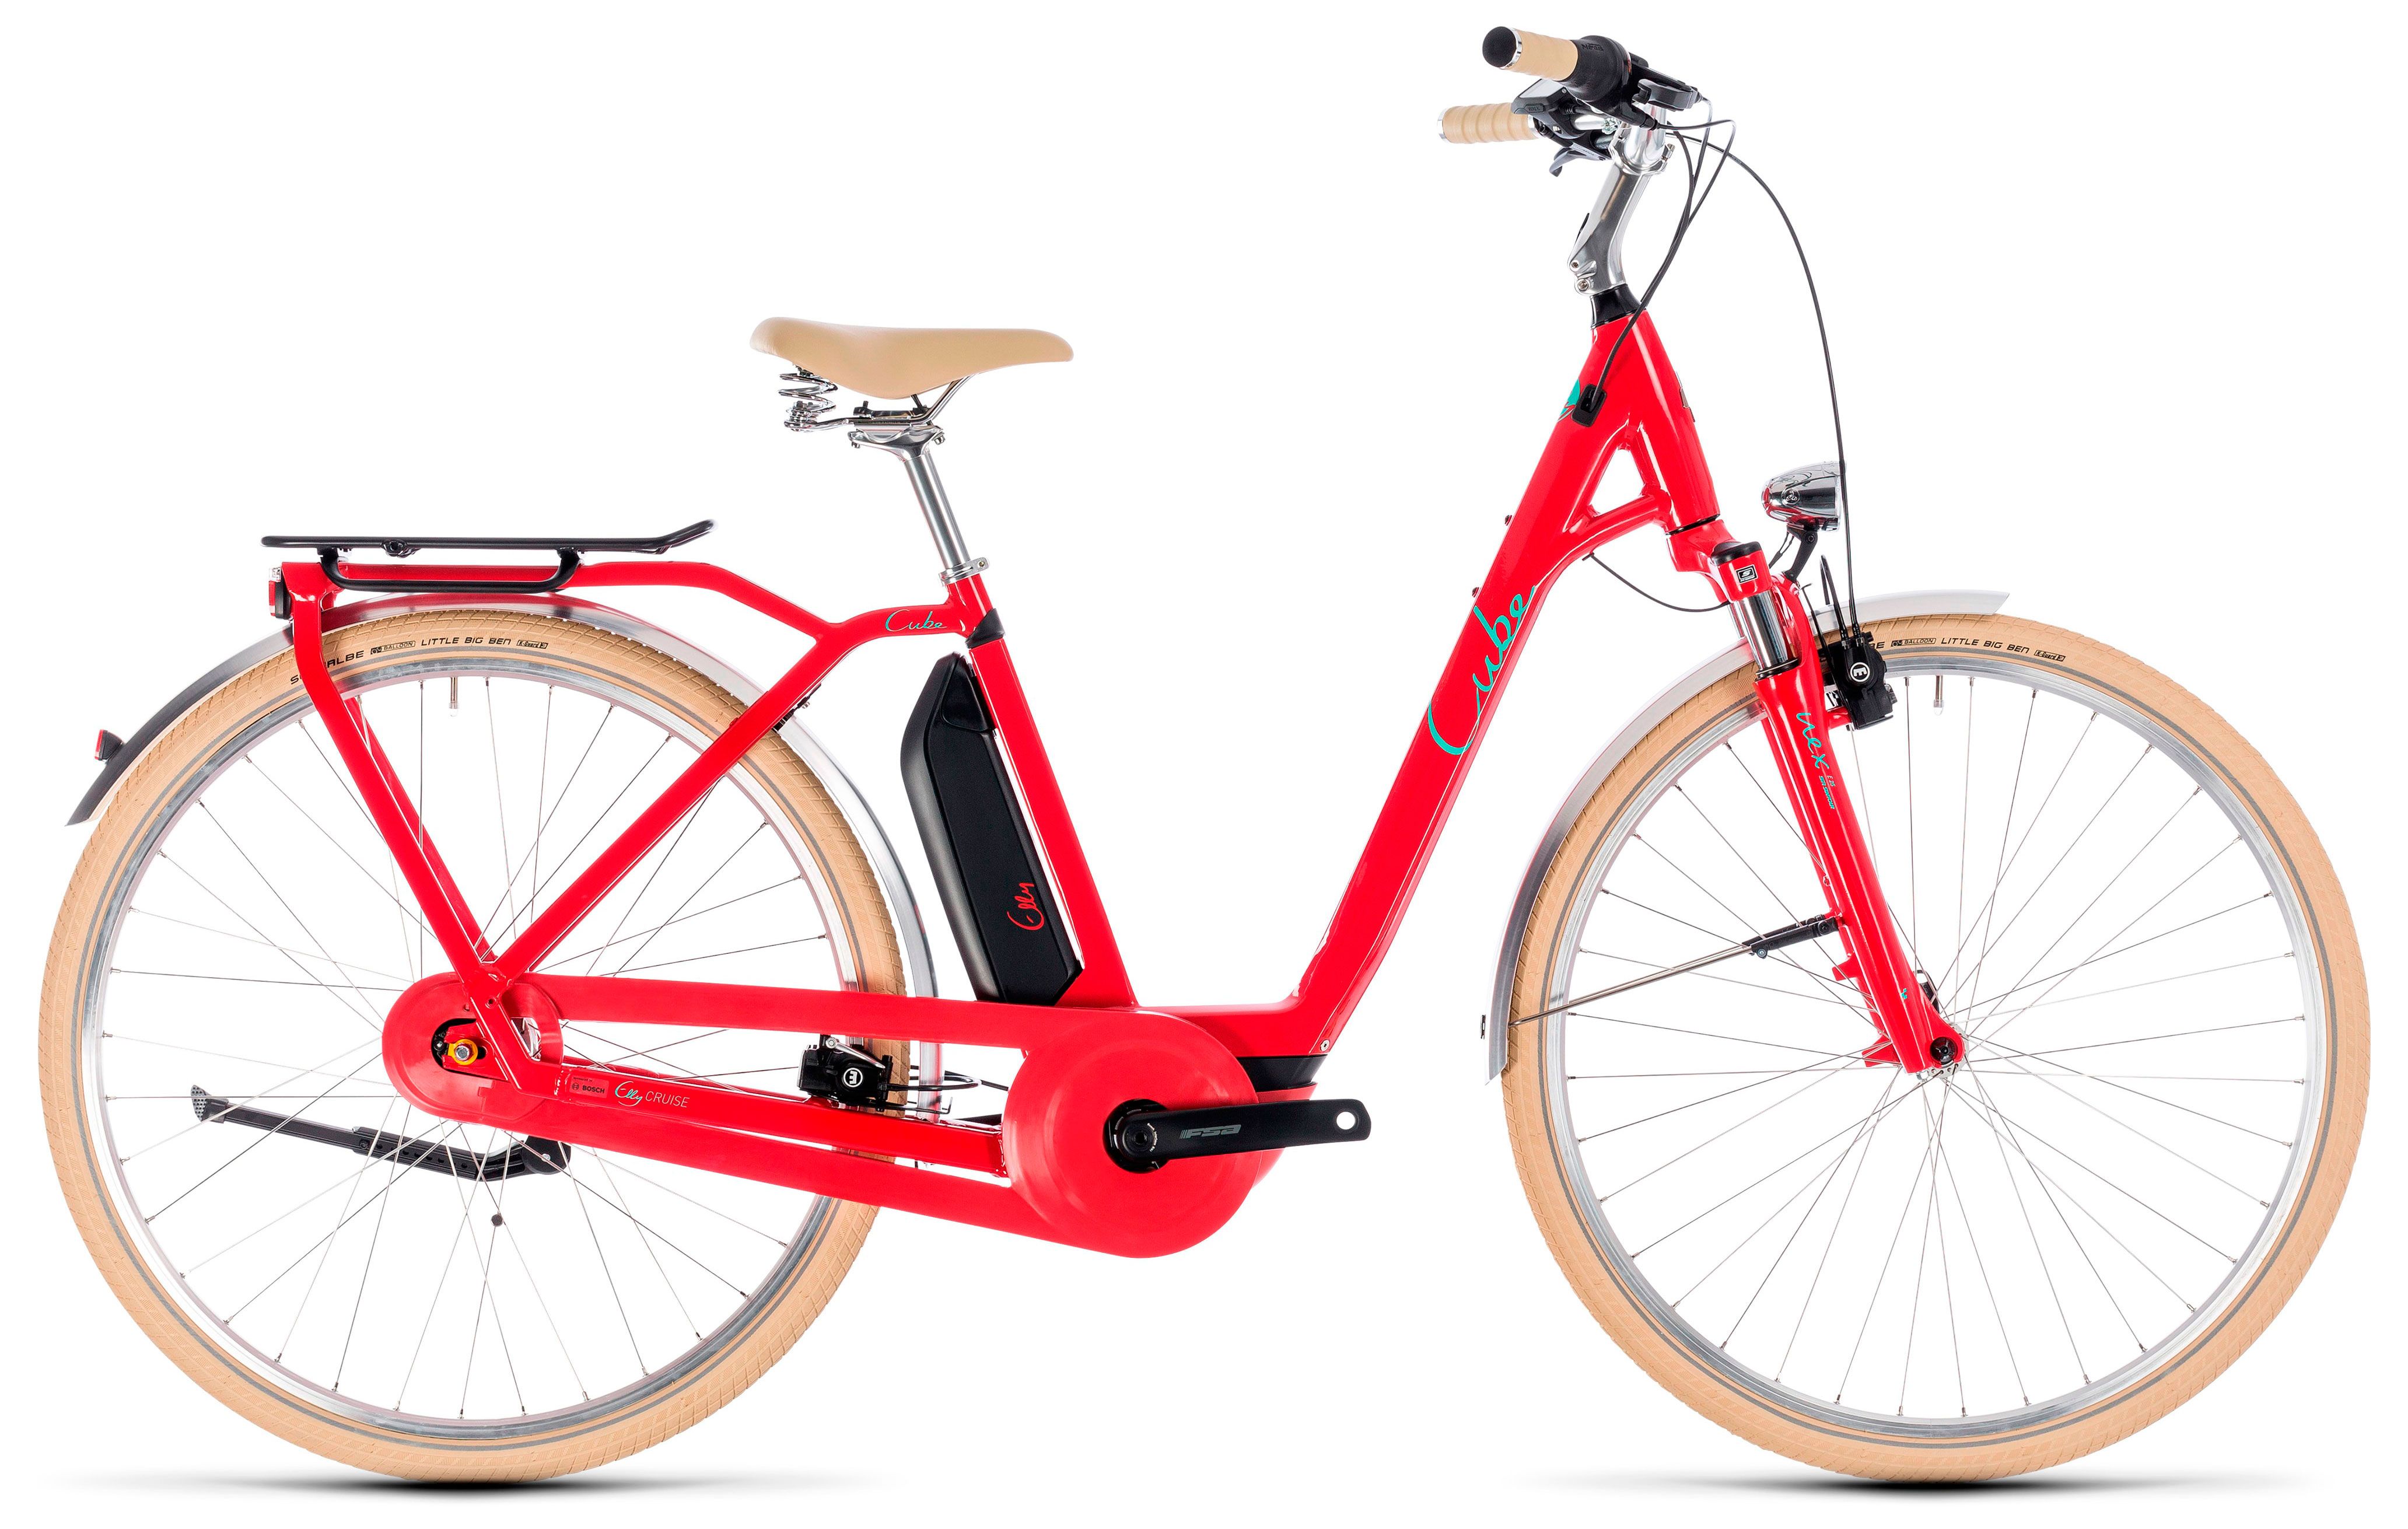  Отзывы о Трехколесный детский велосипед Cube Elly Cruise Hybrid 500 2018